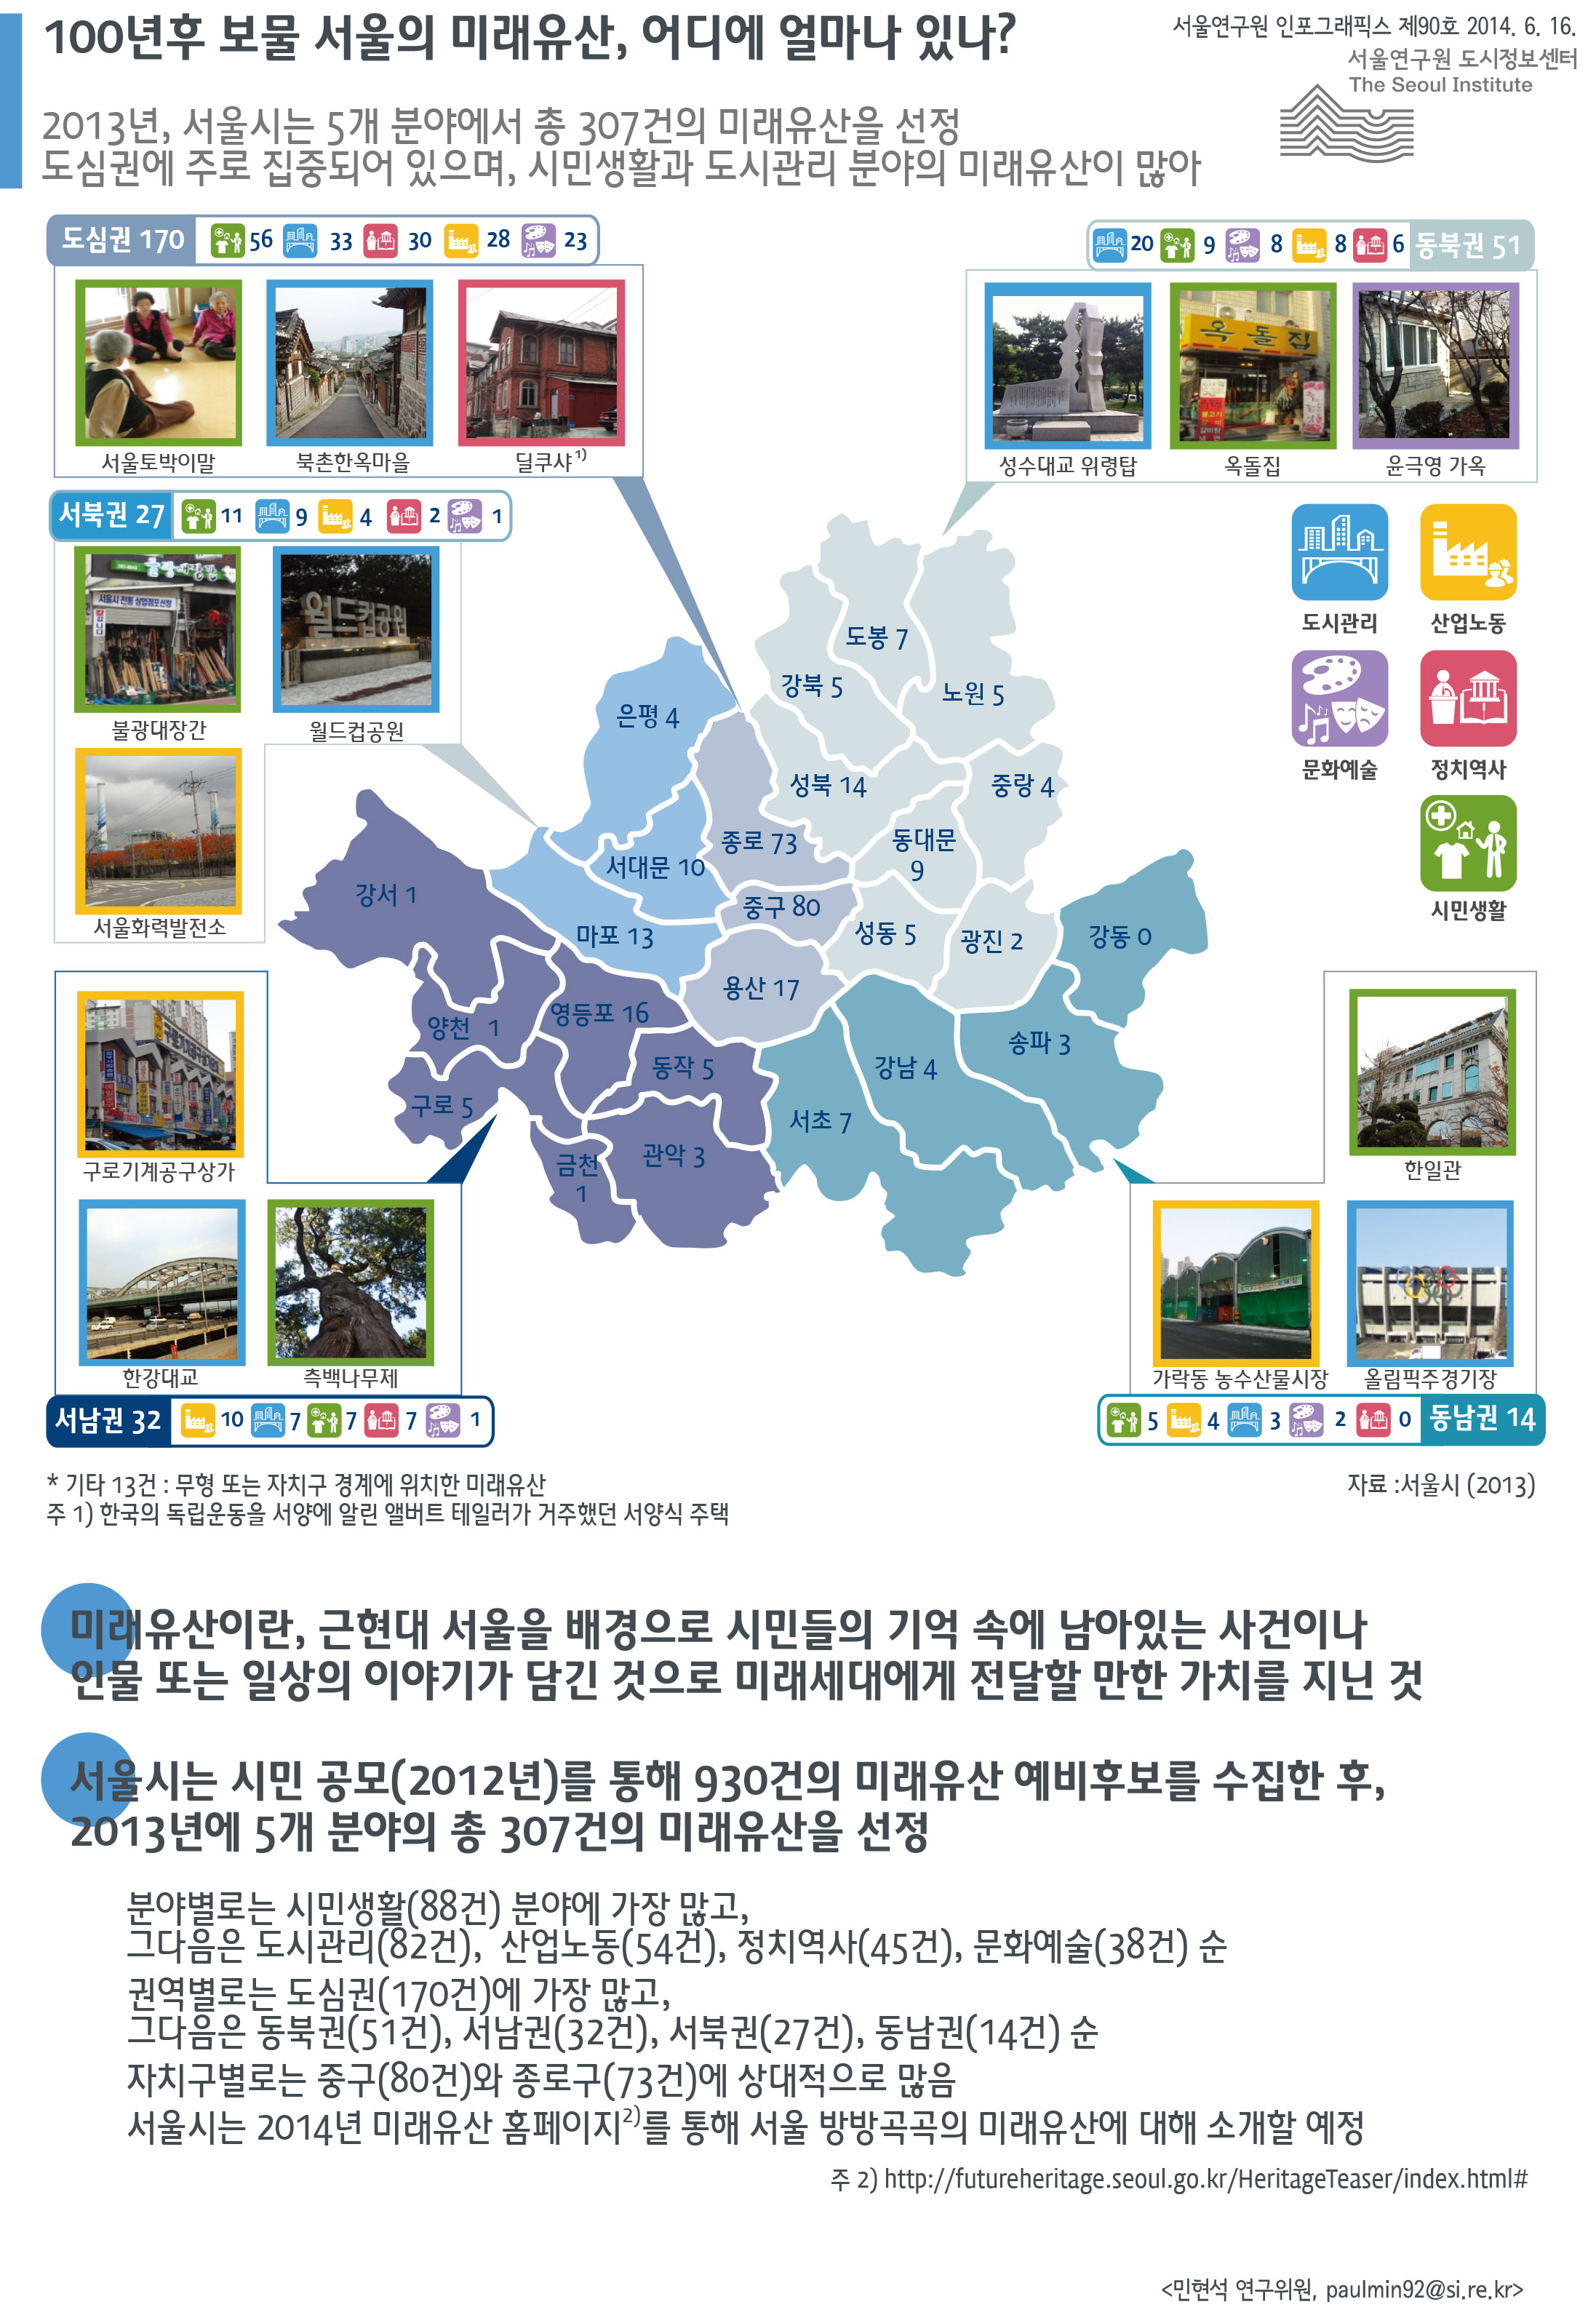 100년후 보물 서울의 미래유산, 어디에 얼마나 있나? 서울인포그래픽스 제90호 2014년 6월 16일 2013년, 서울시는 5개 분야에서 총 307건의 미래유산을 선정함. 도심권에 주로 집중되어 있으며, 시민생활과 도시관리 분야의 미래유산이 많음으로 정리될 수 있습니다. 인포그래픽으로 제공되는 그래픽은 하단에 표로 자세히 제공됩니다.